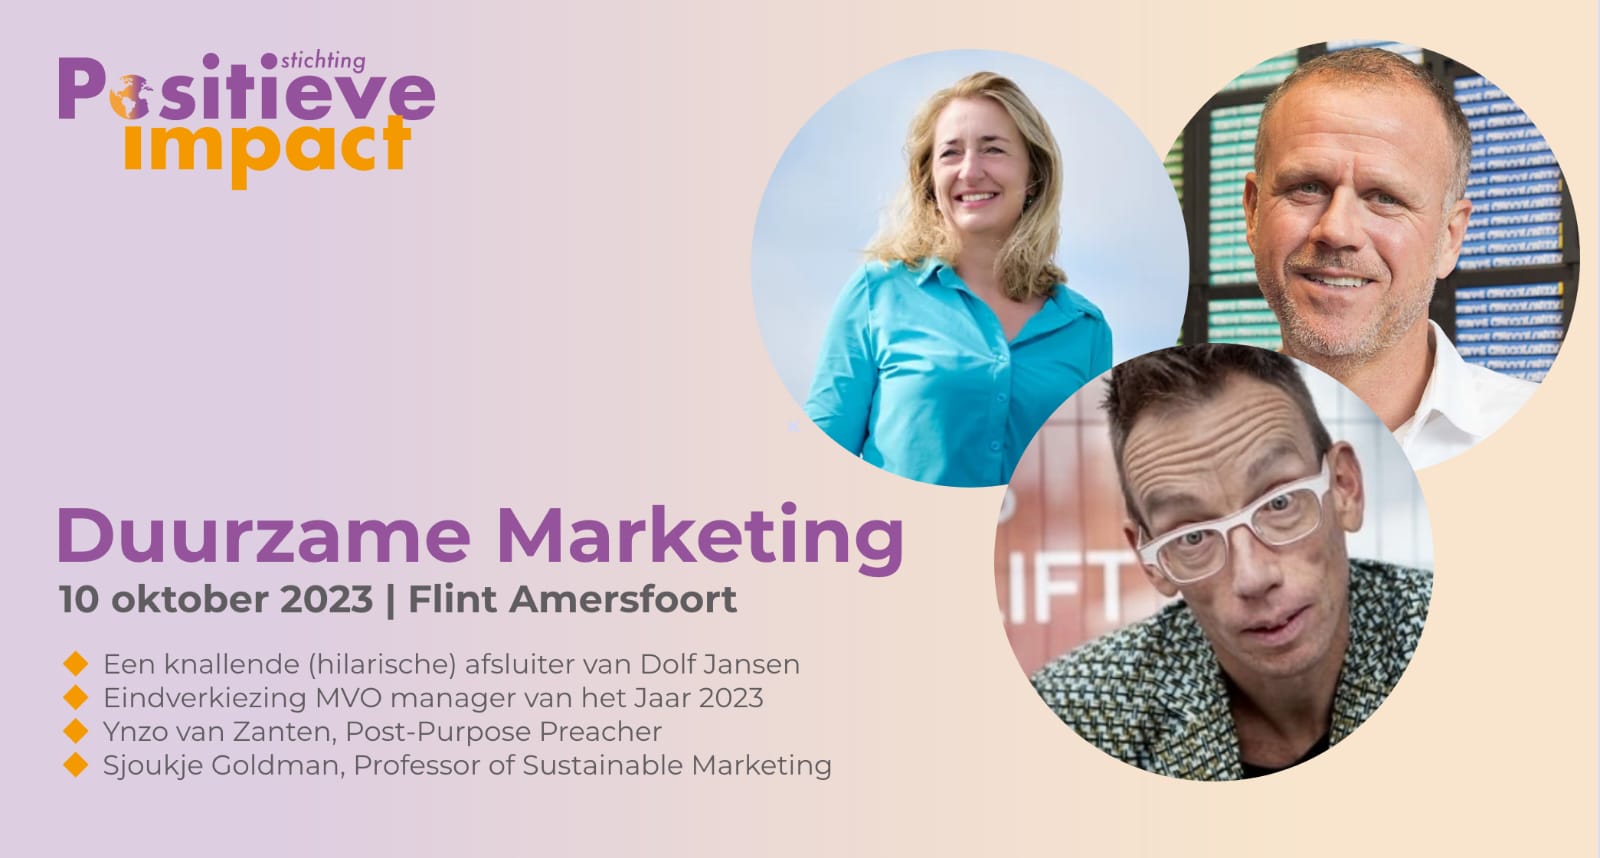 Event Stichting Positieve Impact: Duurzame Marketing met ook de MVO Manager vh Jaar eindverkiezing